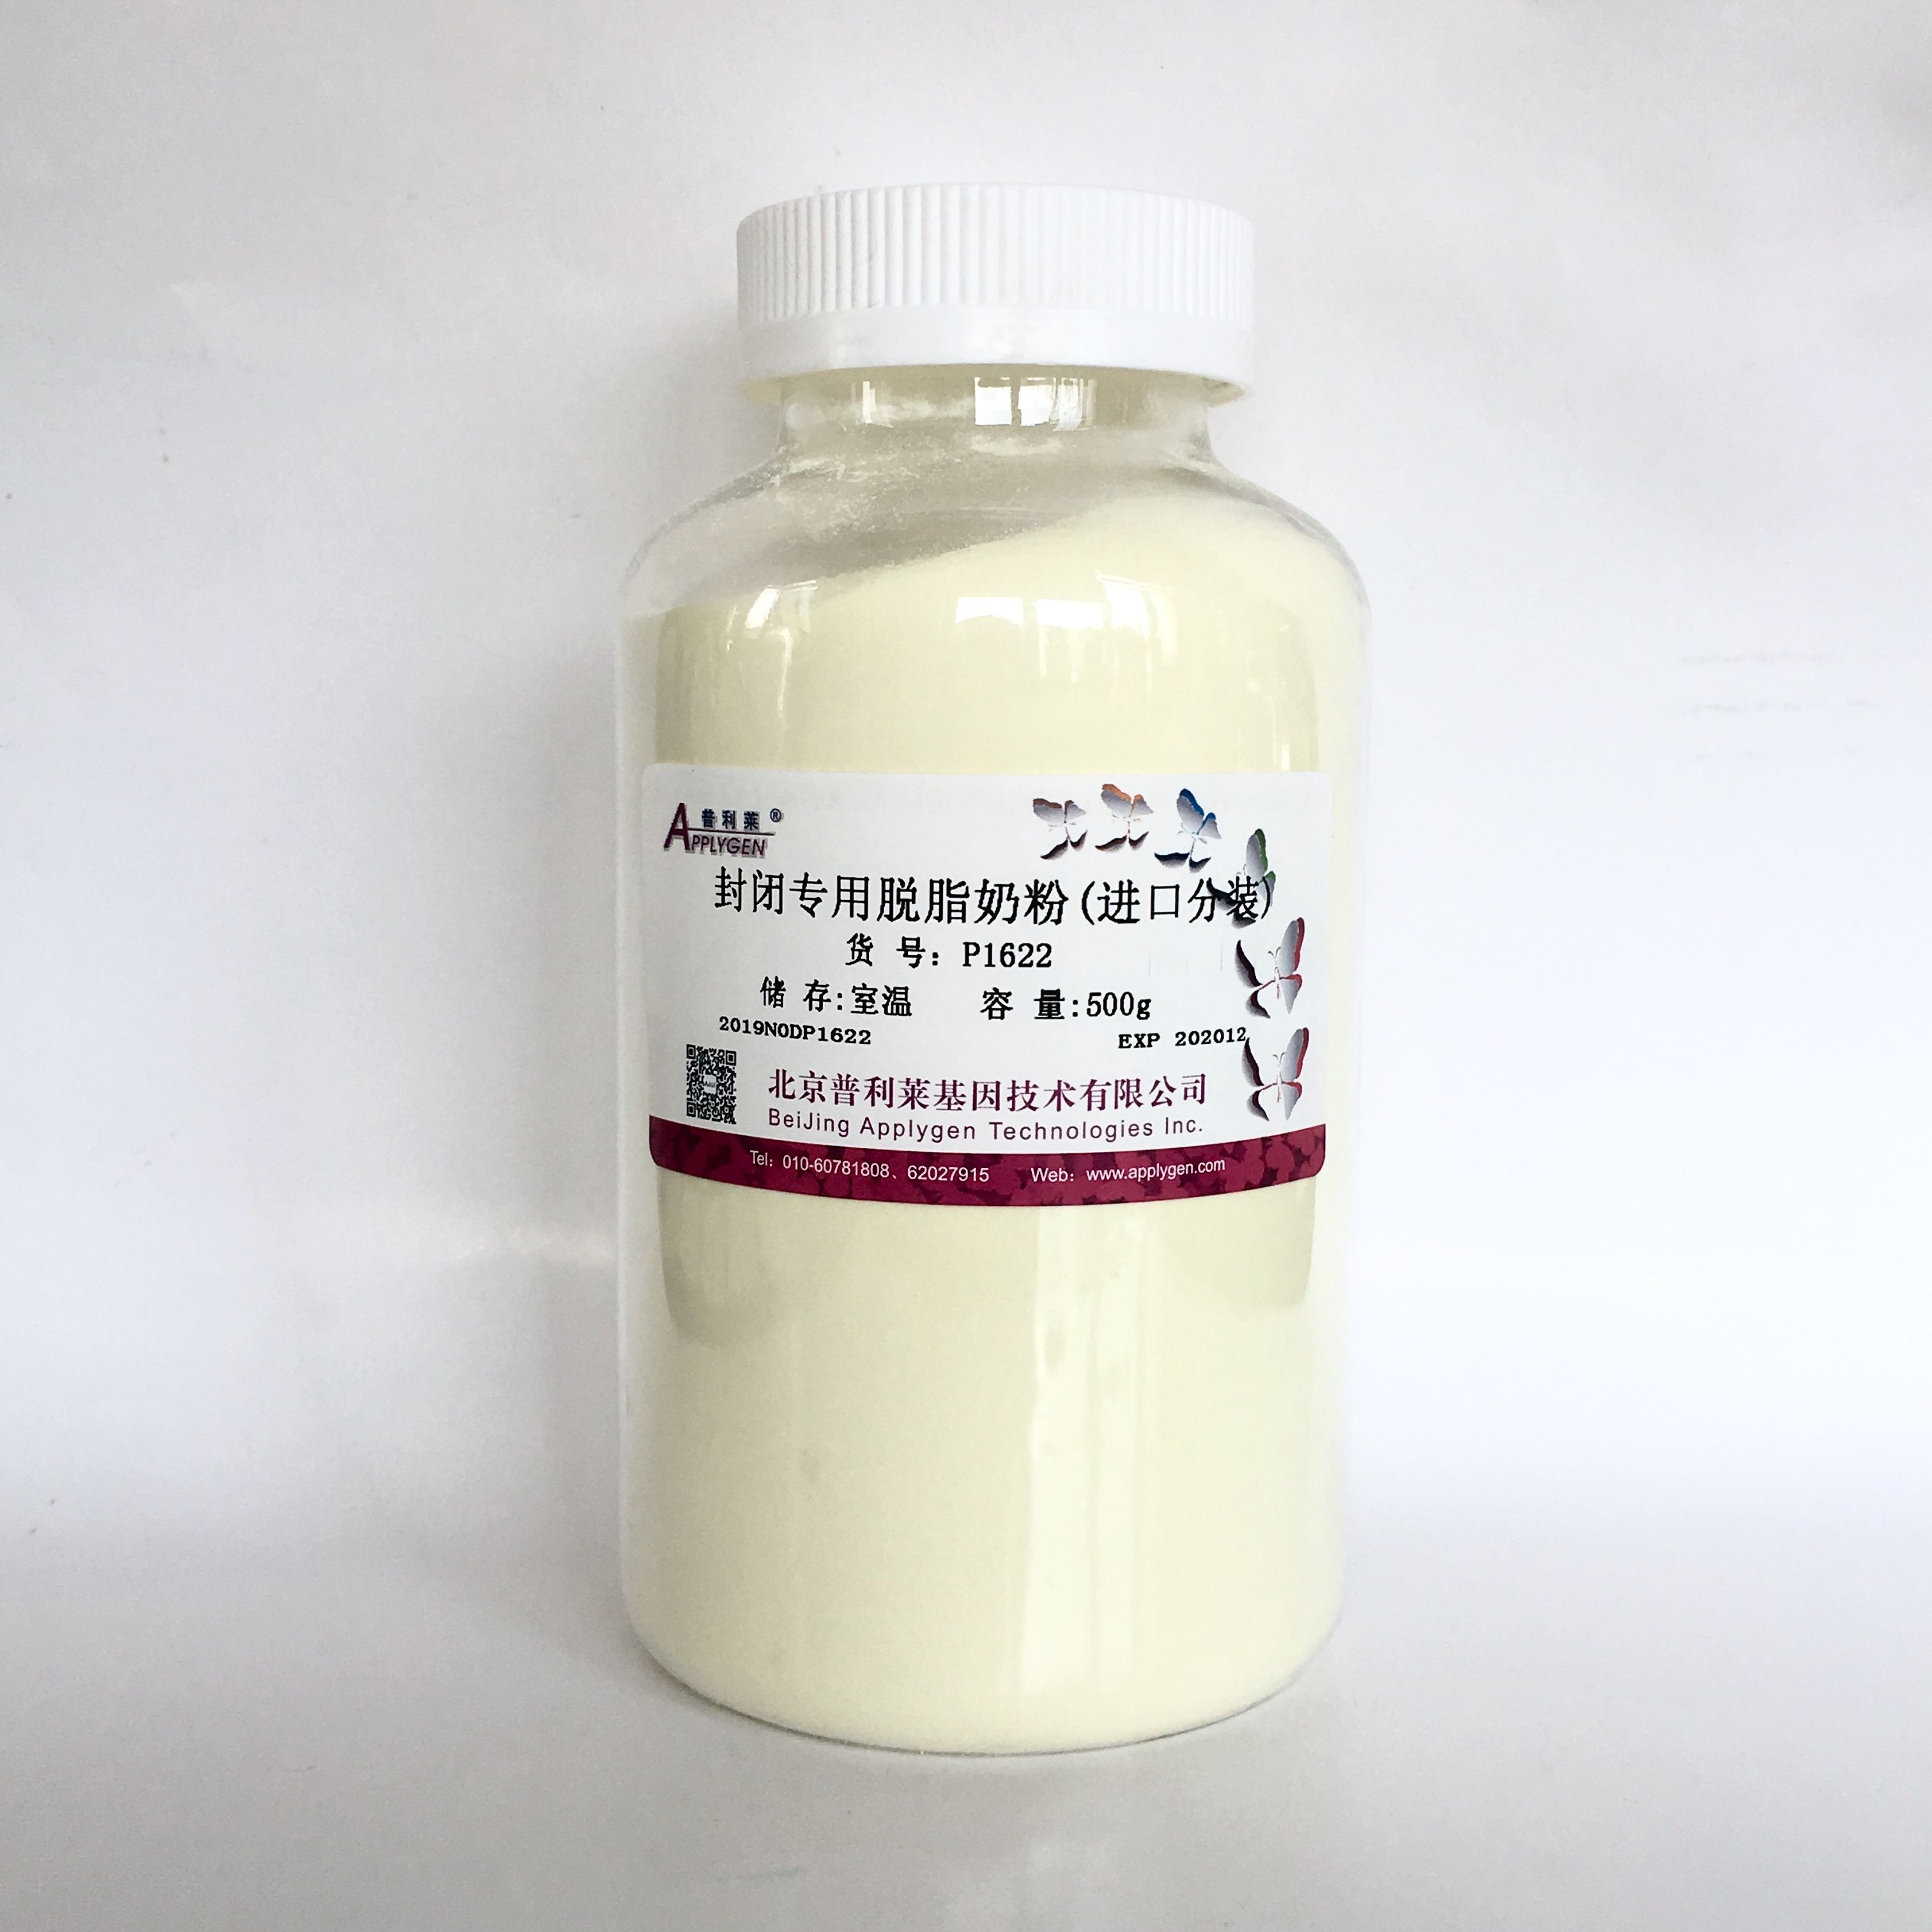 封闭专用脱脂奶粉（进口分装）  P1622  厂家直销，提供OEM定制服务，大包装更优惠 